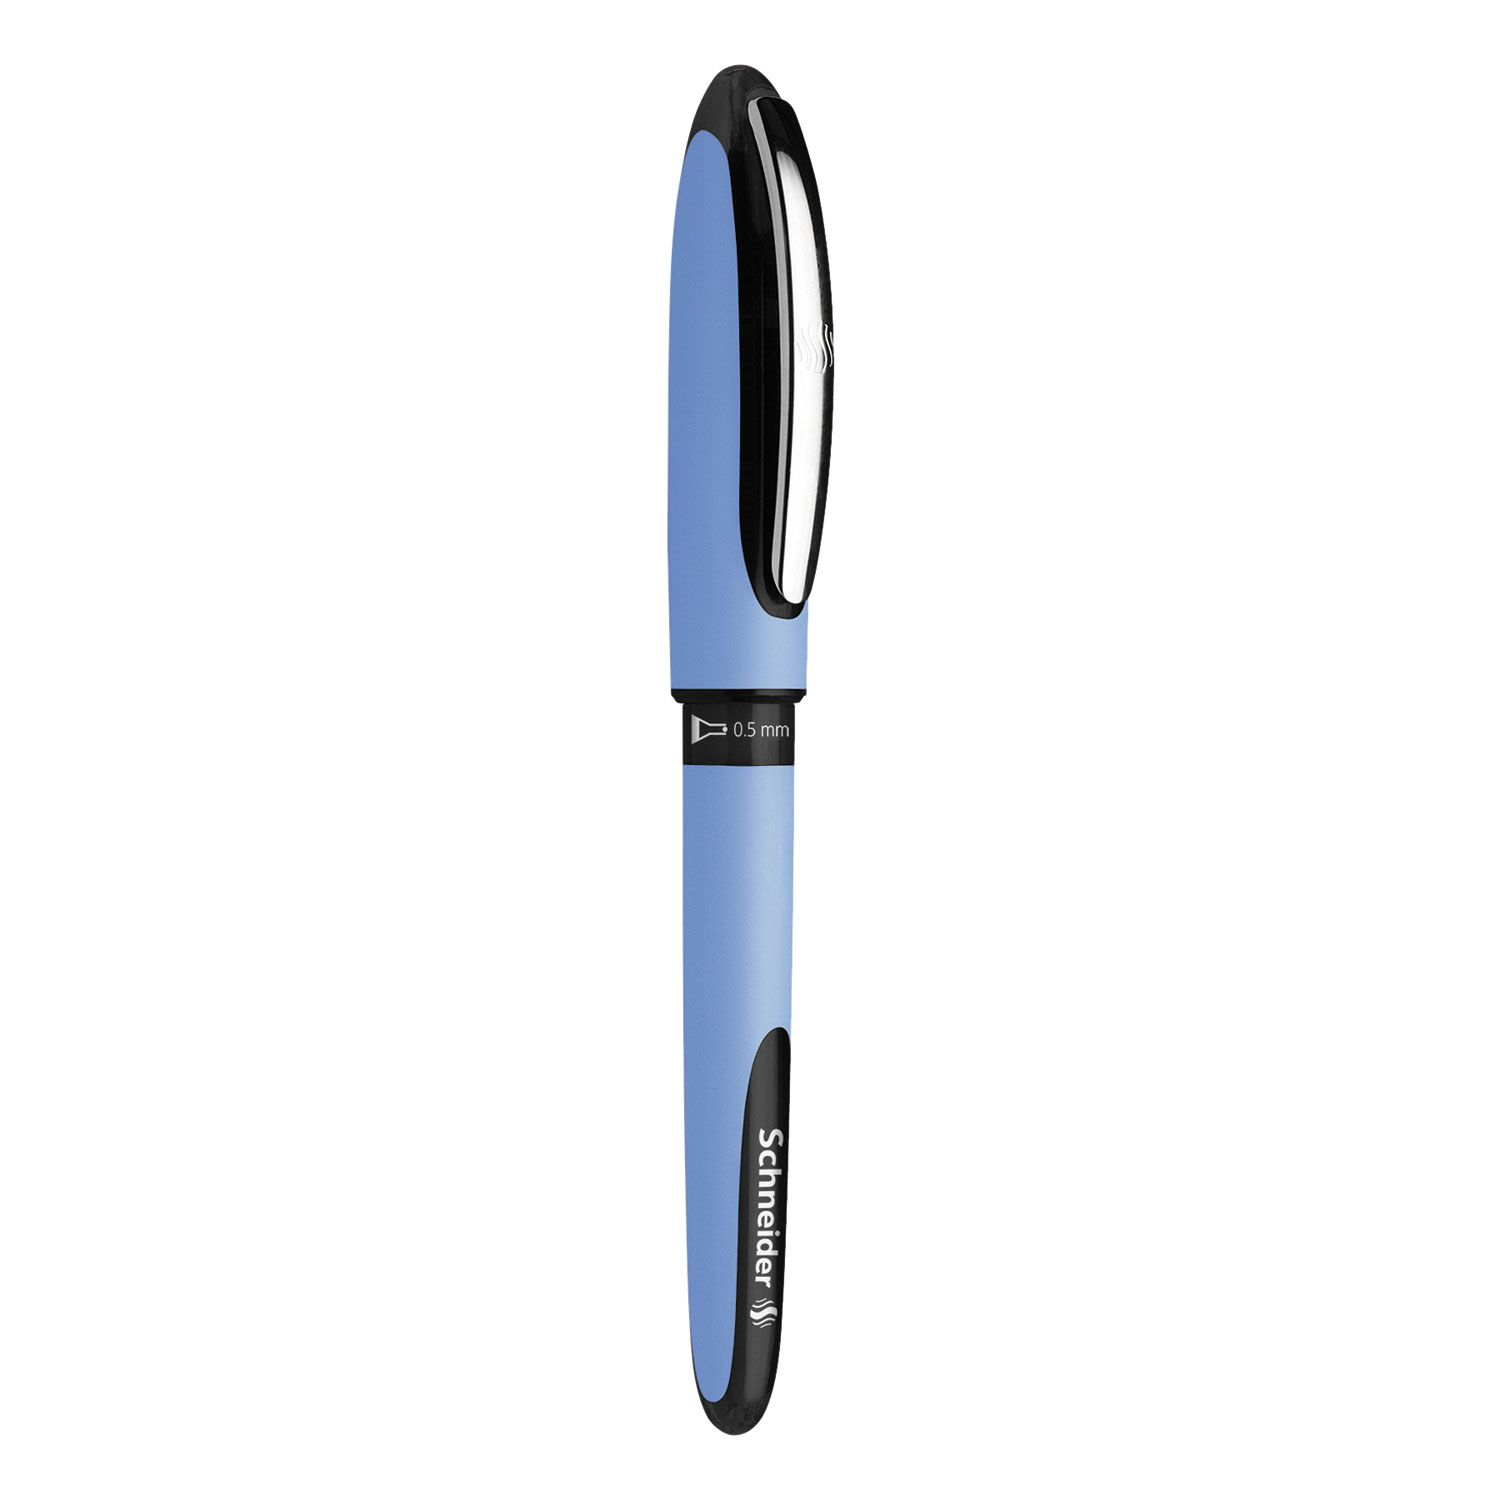 Schneider® Schneider One Hybrid Stick Roller Ball Pen, 0.5mm, Black Ink, Blue Barrel, 10/Box